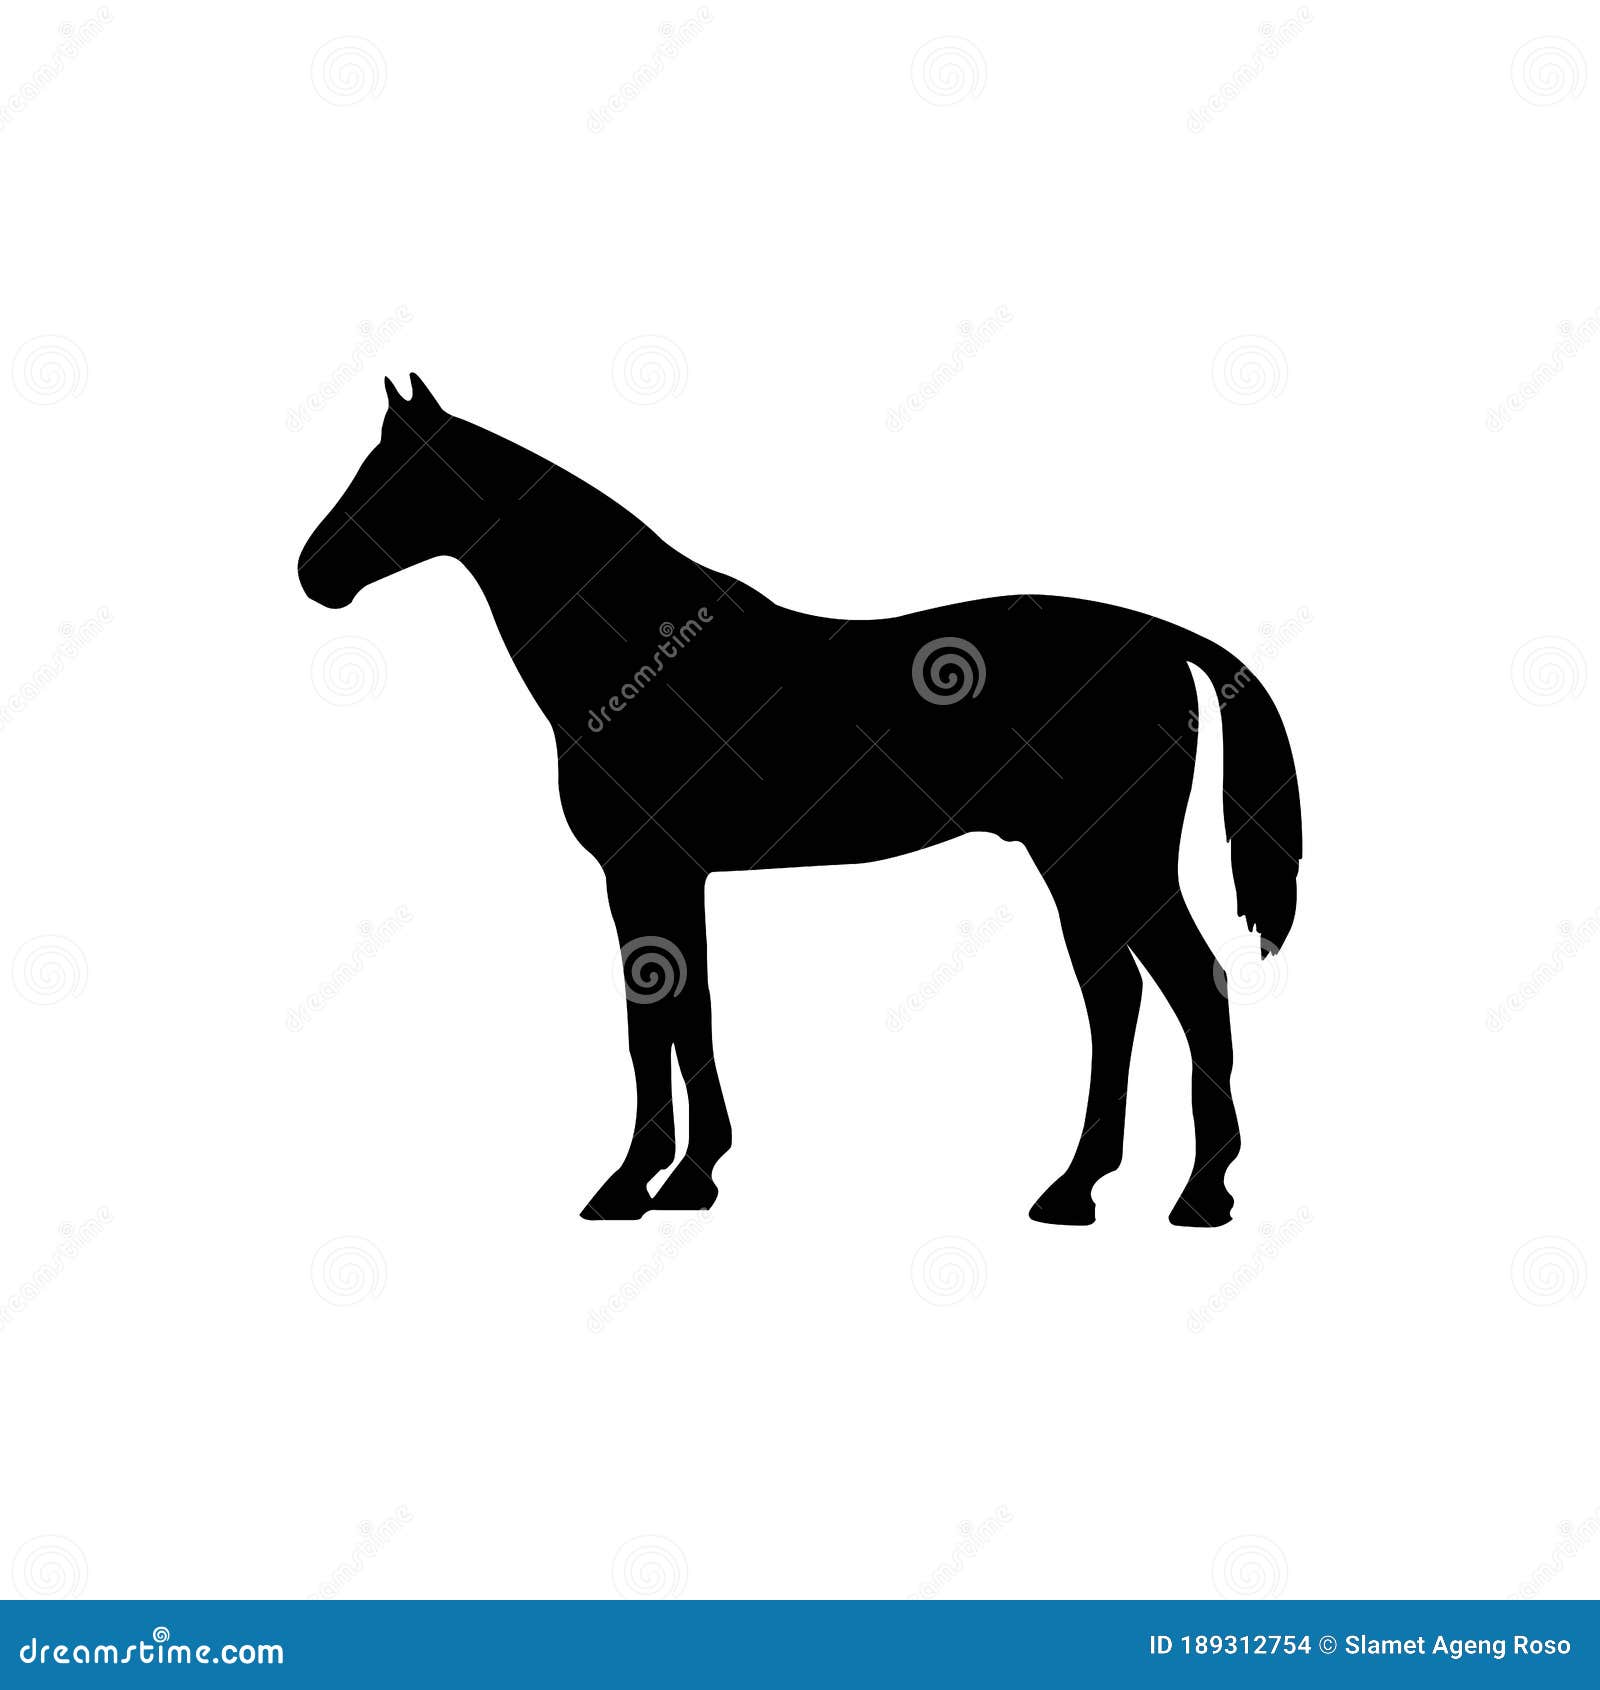 Design do logotipo da silhueta do garanhão do cavalo do cavaleiro